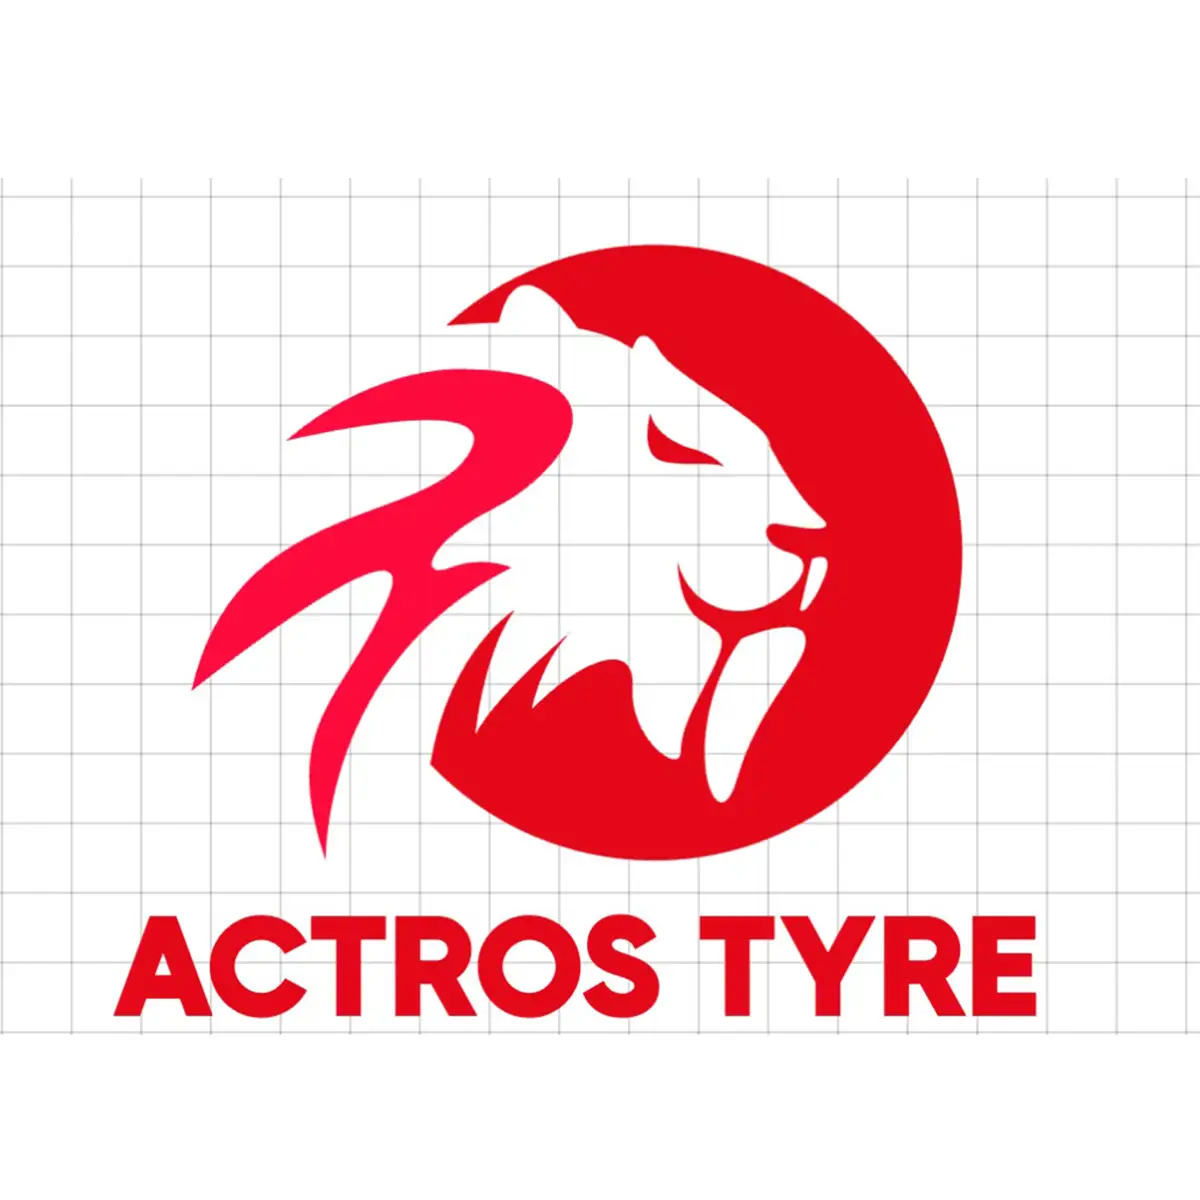 Actros type logo